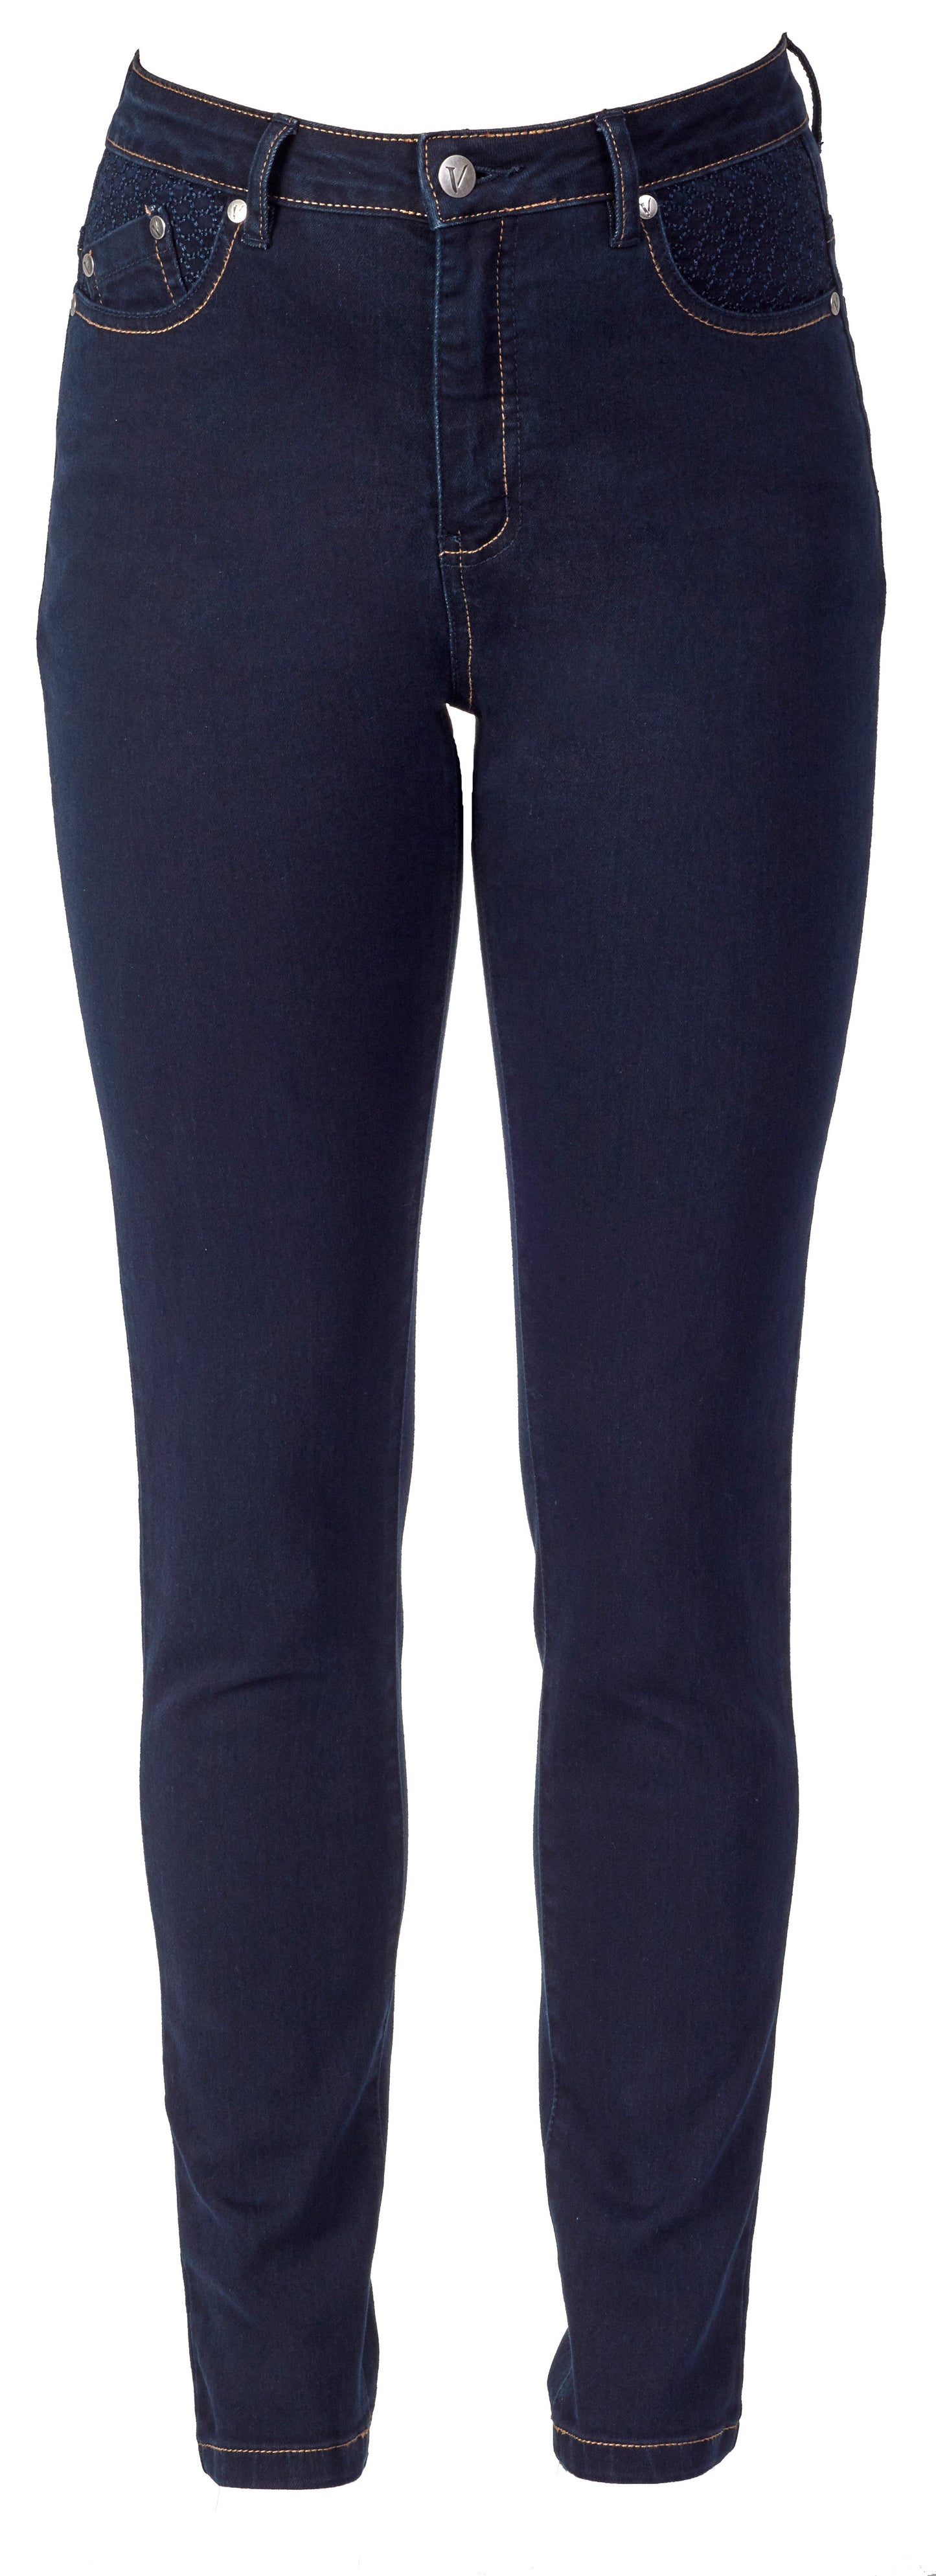 Vassalli - Denim - Style 5535 Basket Weave Pocket Jeans - 3 Colourways INSTORE